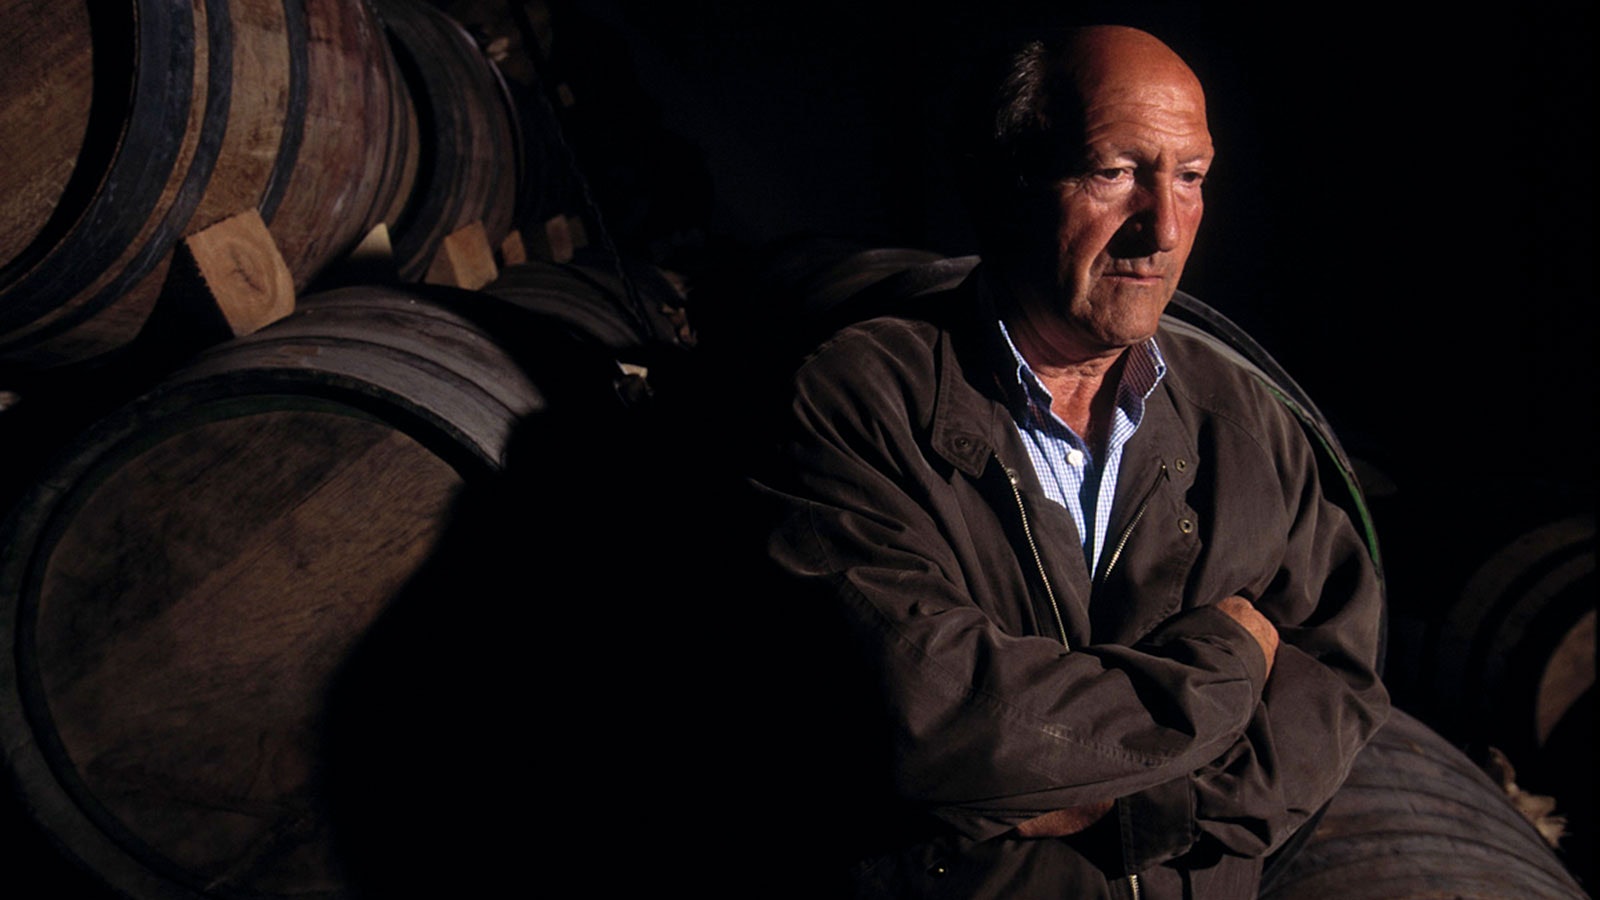   Alejandro Fernandez war stolz auf seine Heimatstadt und seine Region in Spanien und arbeitete daran, sein Profil in der Weinwelt zu stärken.